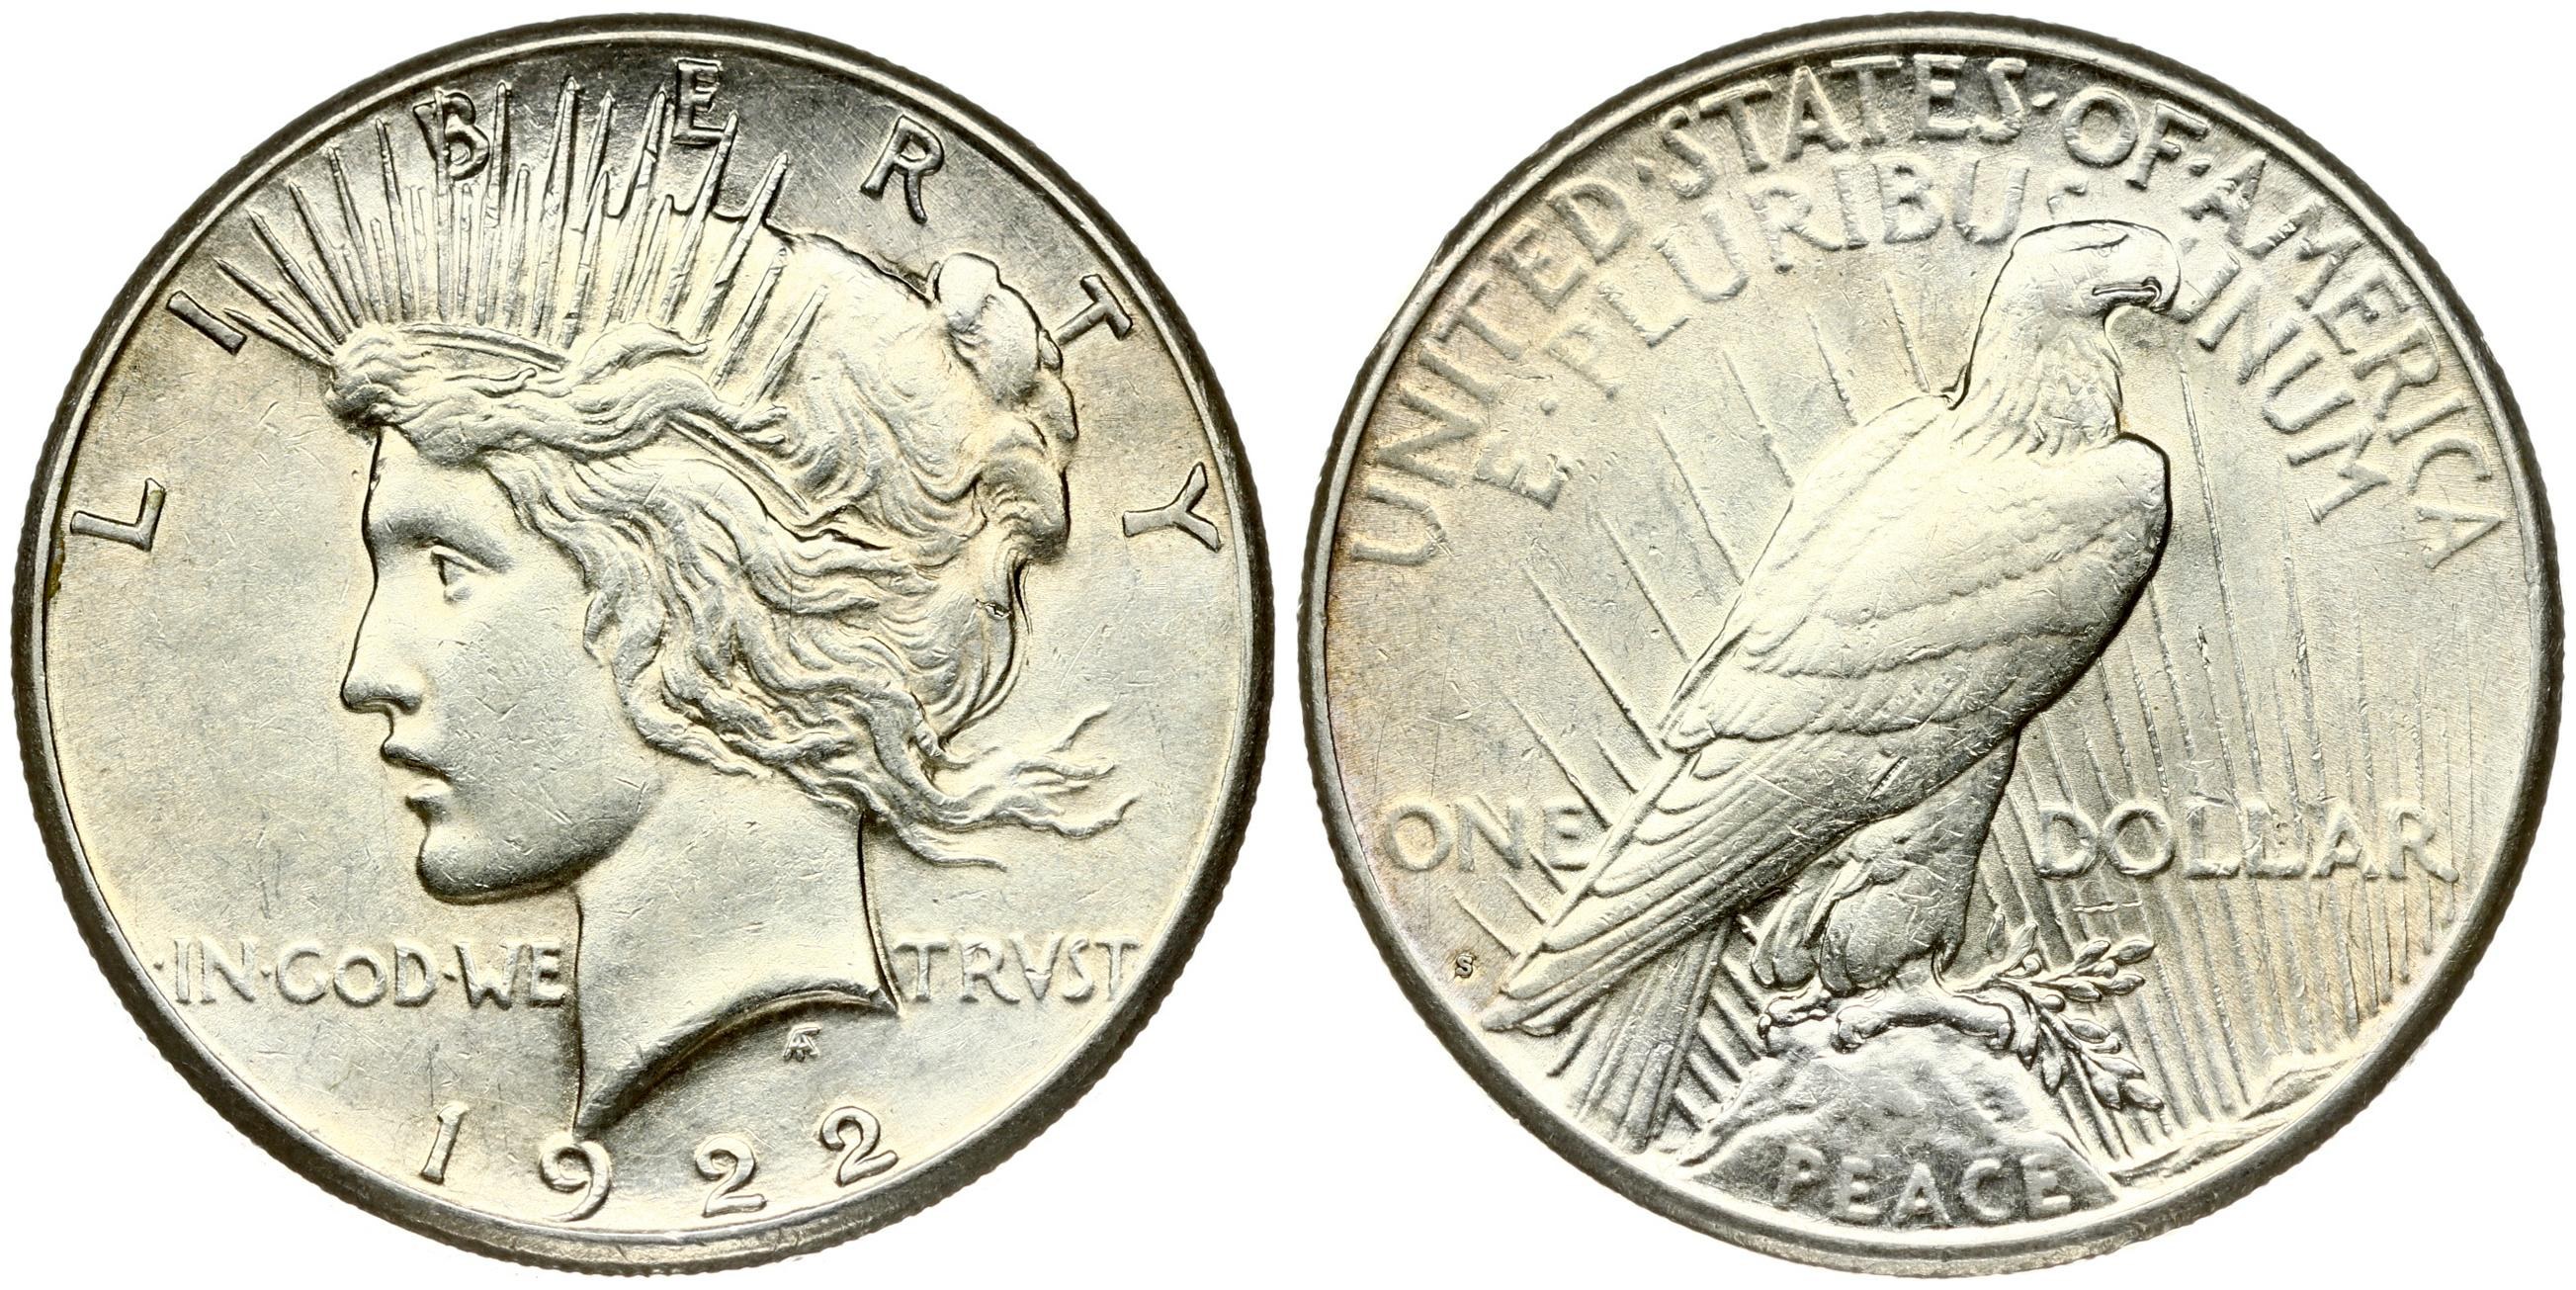 1 доллар 56. 1 Доллар 1974 Эйзенхауэр. 1 Доллар 1978 США Эйзенхауэр. Монета 1 доллар США Эйзенхауэр 1976. Лунный доллар Эйзенхауэра 1971.